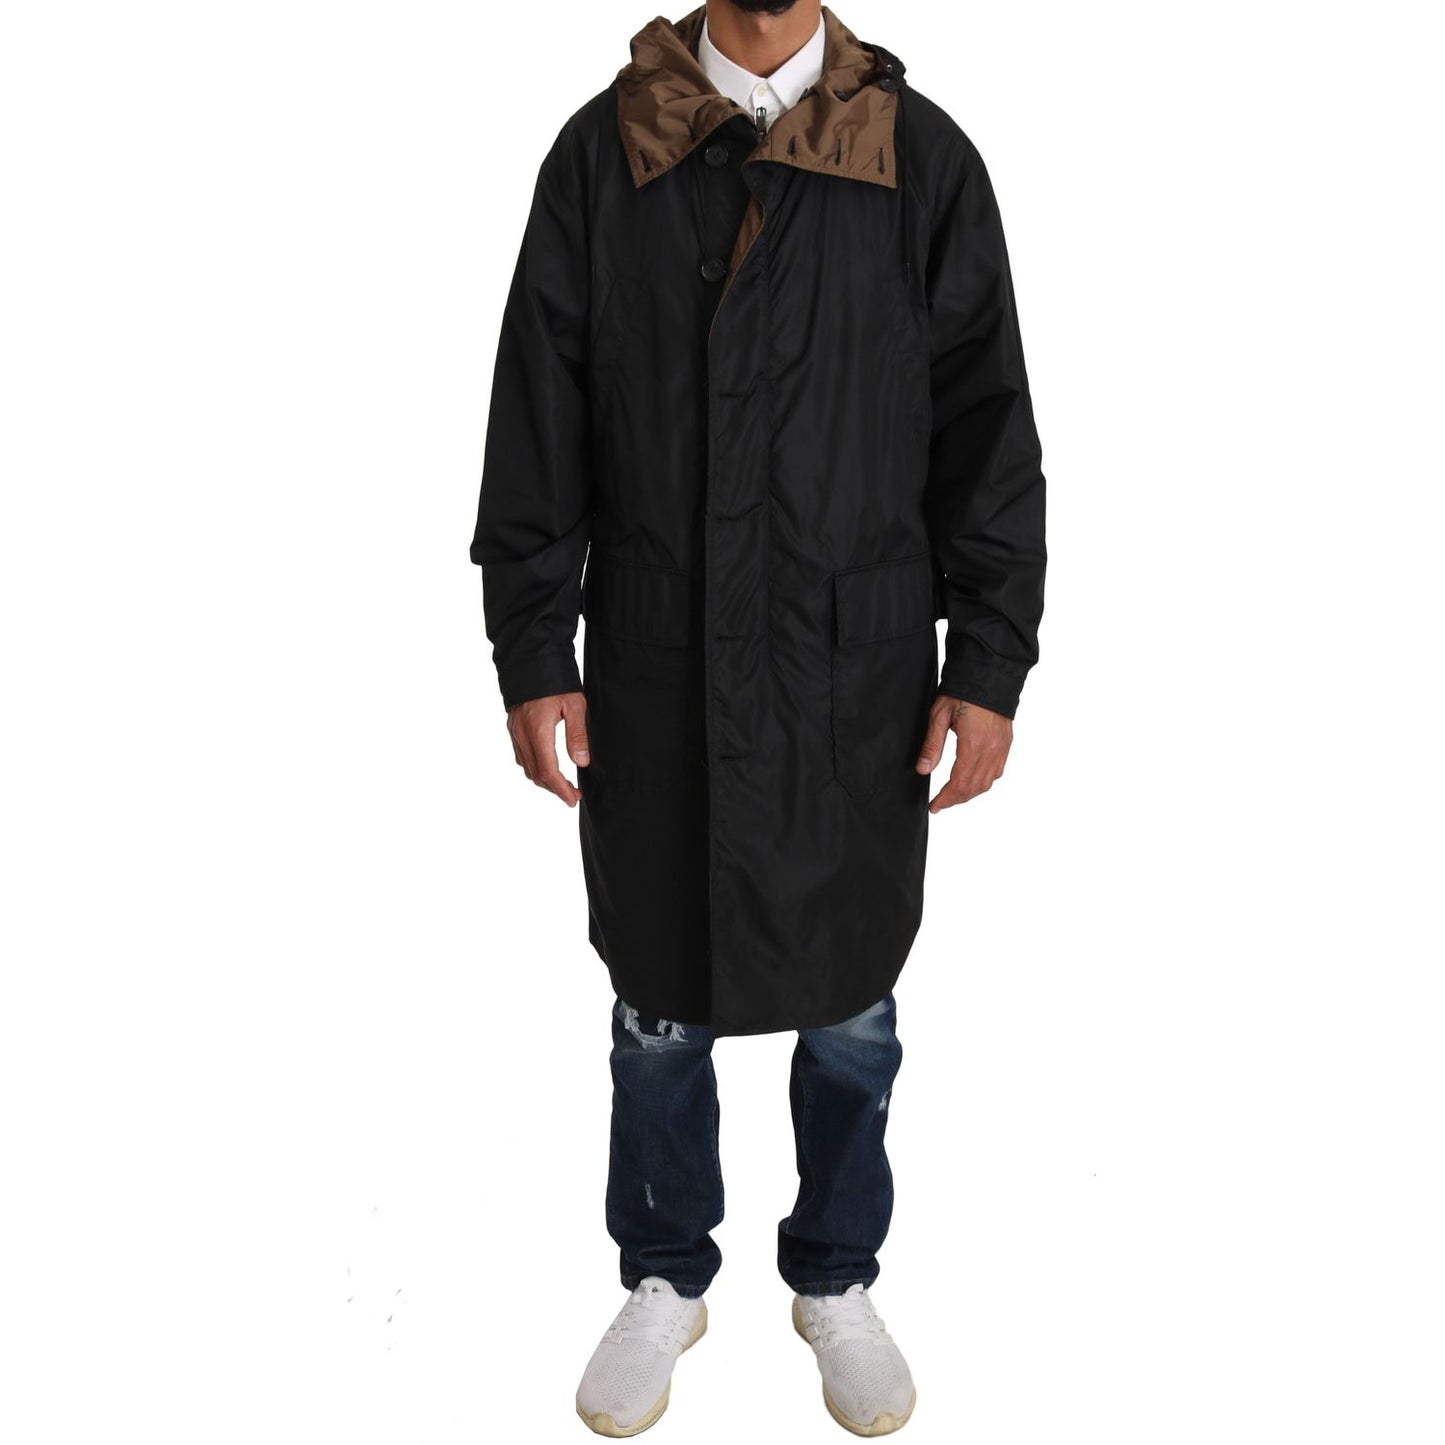 Dolce & Gabbana Elegant Reversible Hooded Raincoat black-brown-hooded-reversible-raincoat Coats & Jackets IMG_0754.jpg